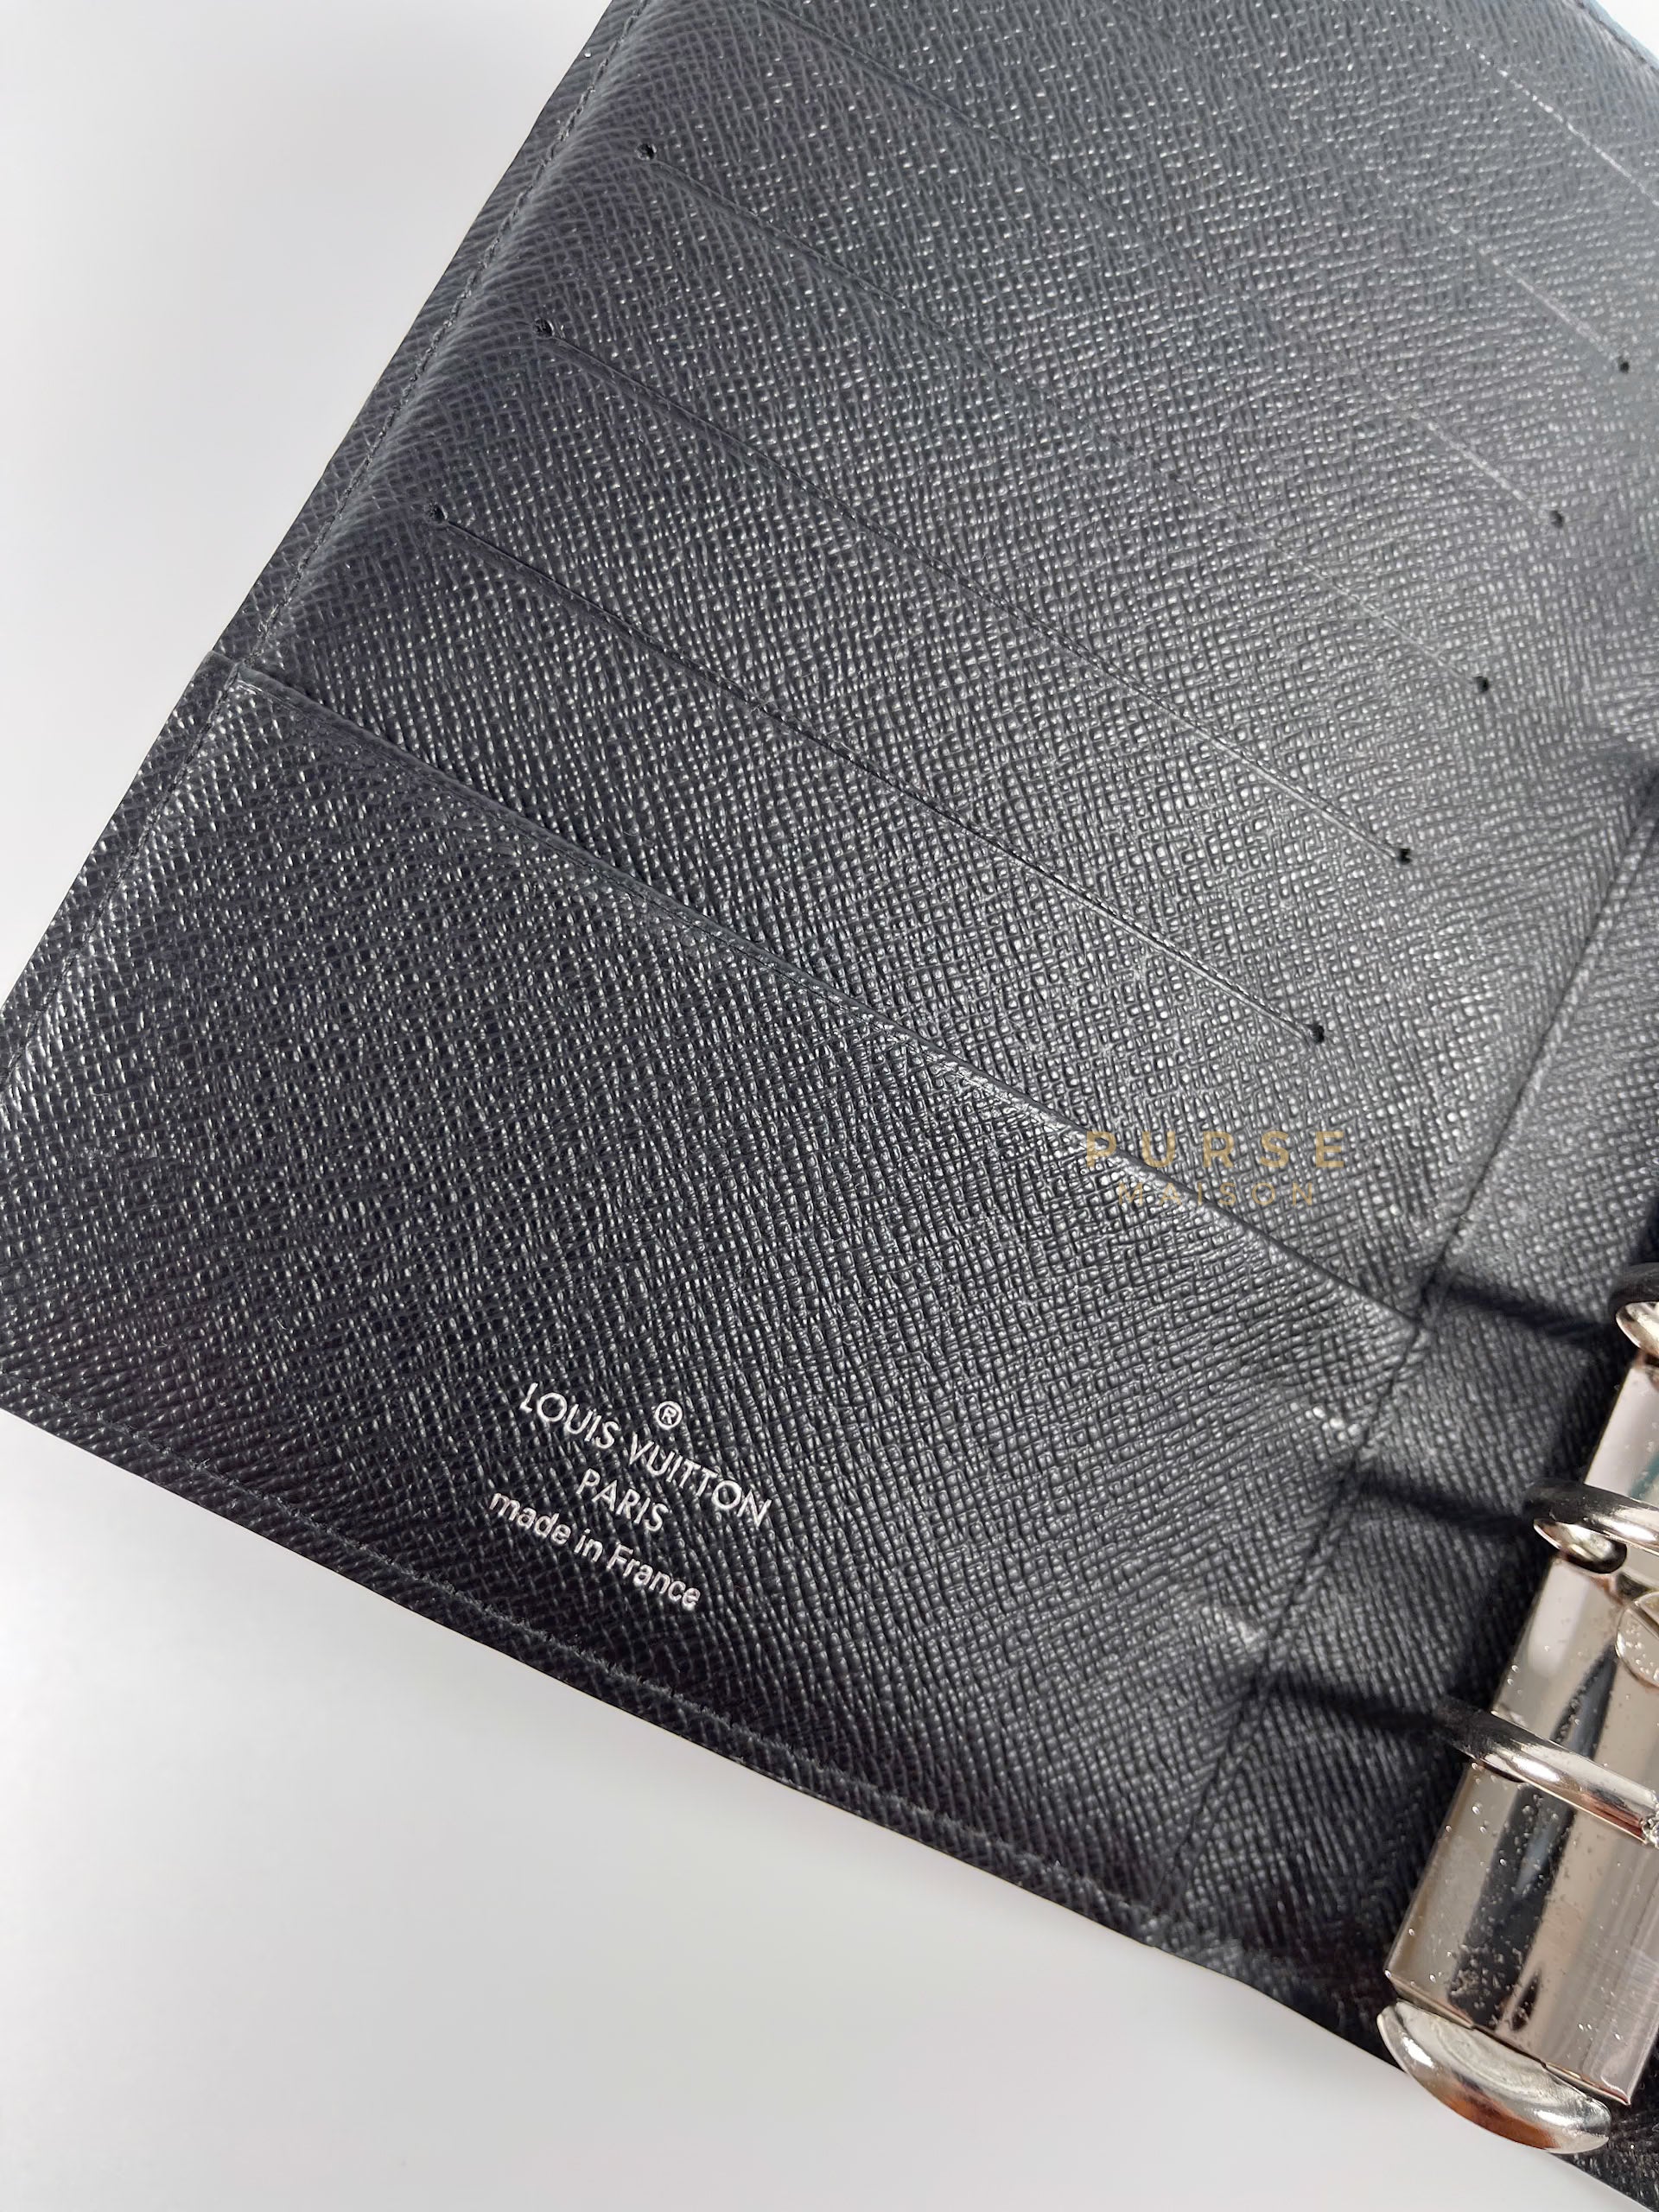 Agenda Cover in Damier Graphite (Date Code: RI4165) | Purse Maison Luxury Bags Shop